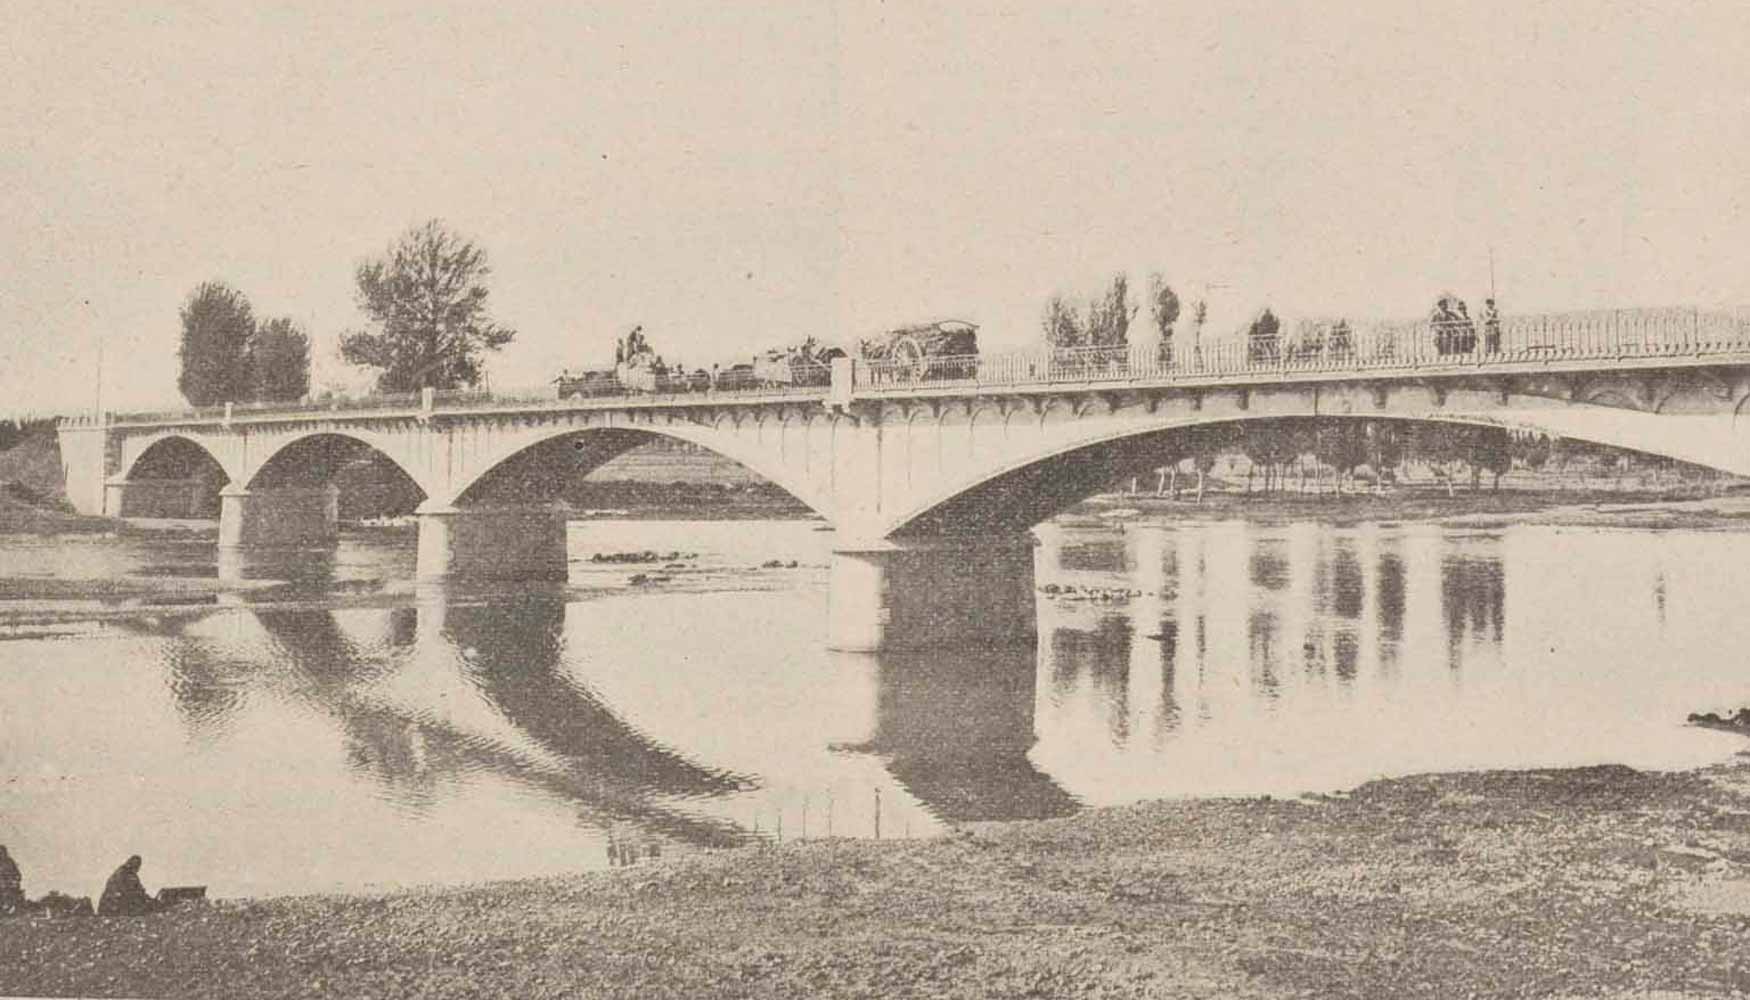 Puente de Ribera (1910) en Valencia de Don Juan (Len). Fuente: http://www.mirame.chduero.es/PHD/Hidro.php?id=196